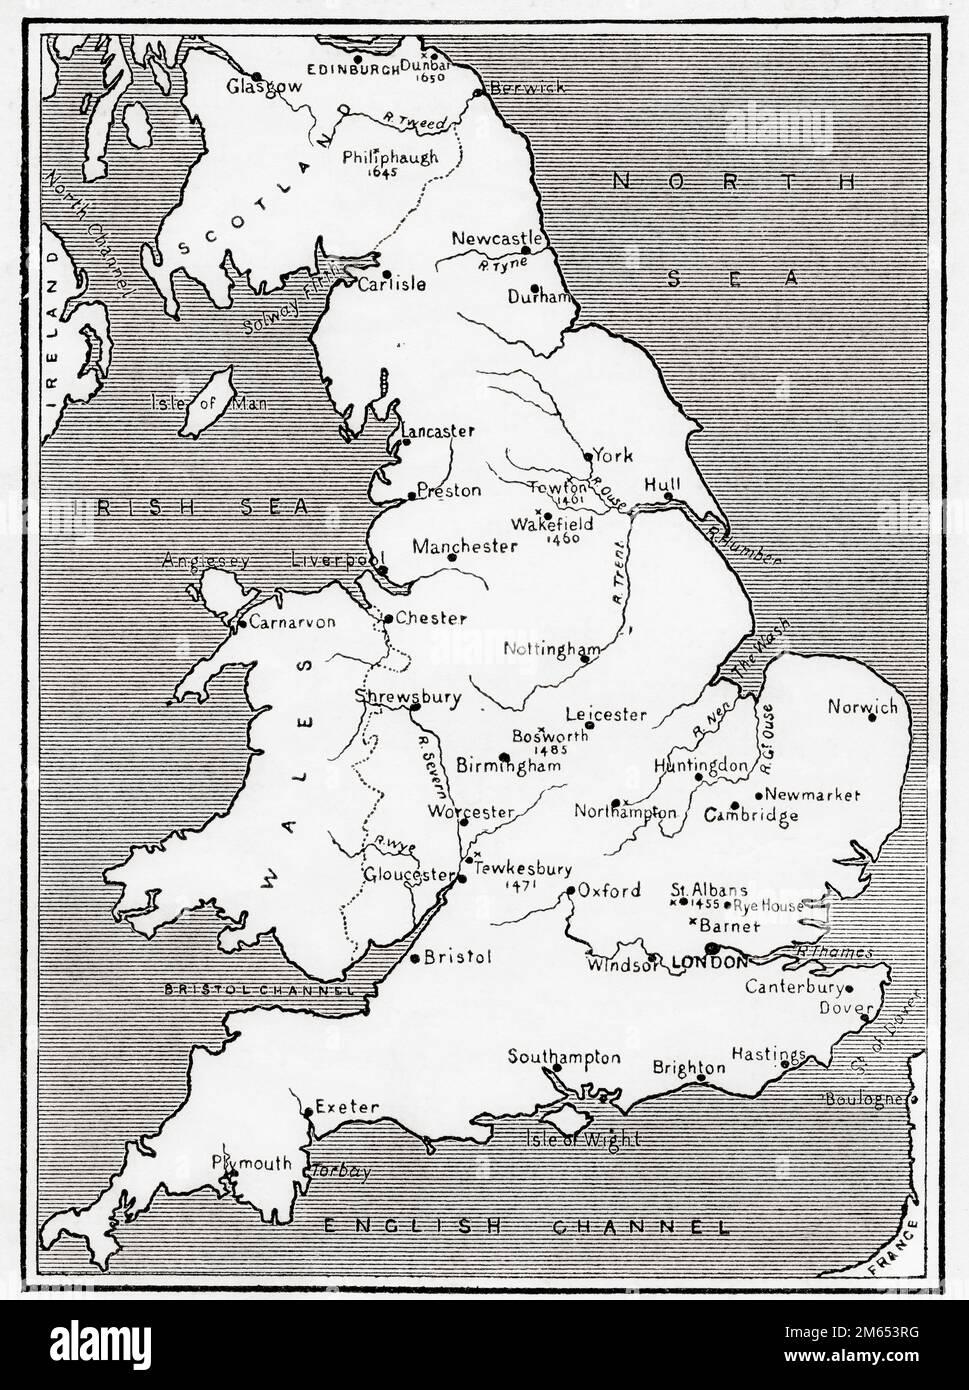 Mappa dell'Inghilterra che illustra le Guerre delle Rose, 15th ° secolo. Dalla Storia dell'Inghilterra, pubblicato nel 1907 Foto Stock